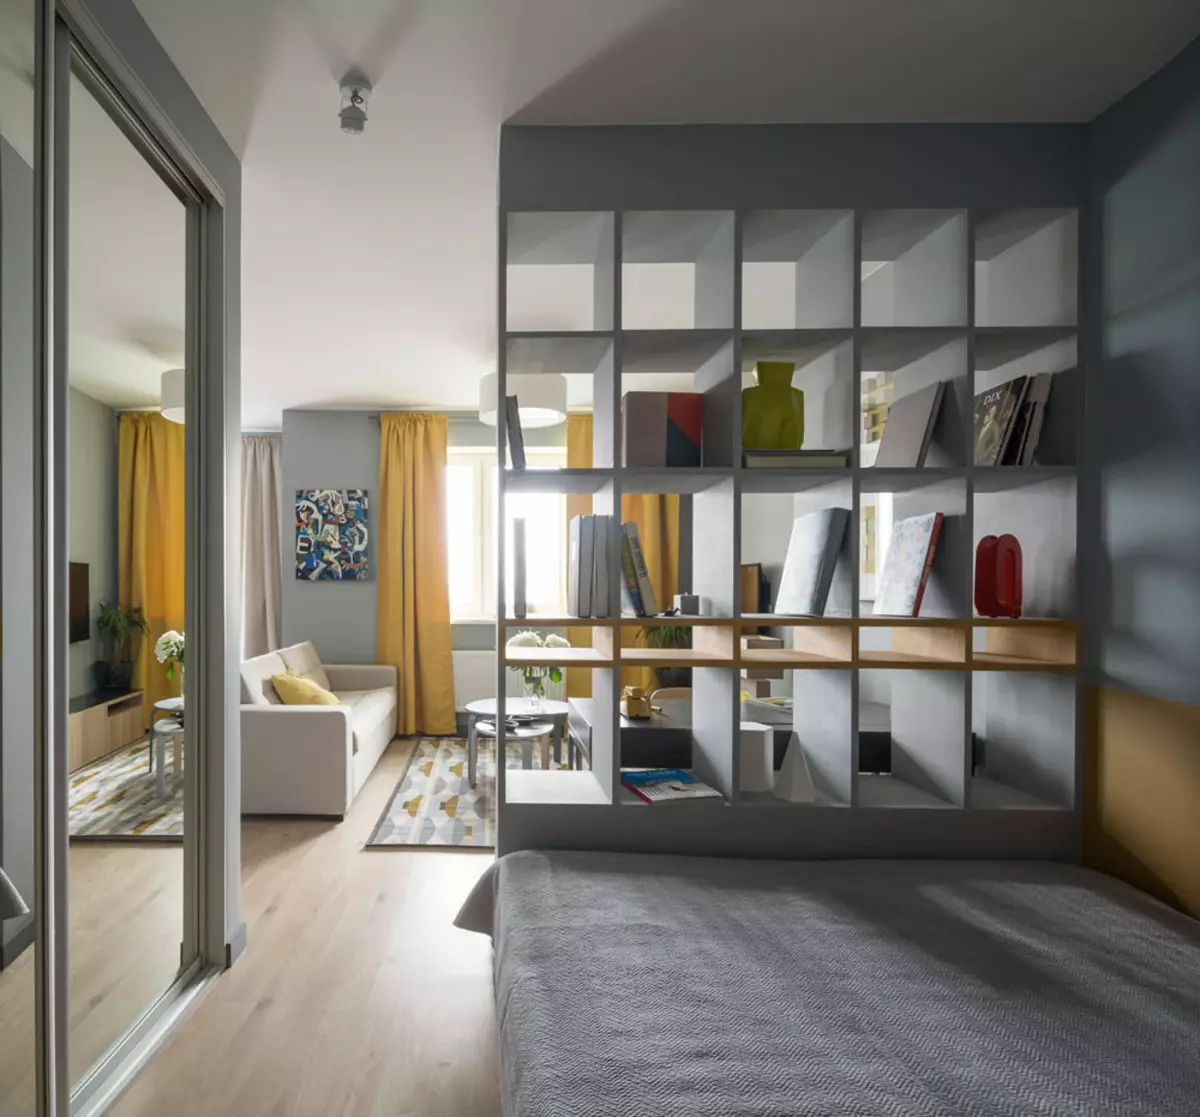 Dormitorios Asientos 19-20 Sq. M. M (66 fotos): Características del diseño de interiores, opciones para zonificar una habitación 9900_62